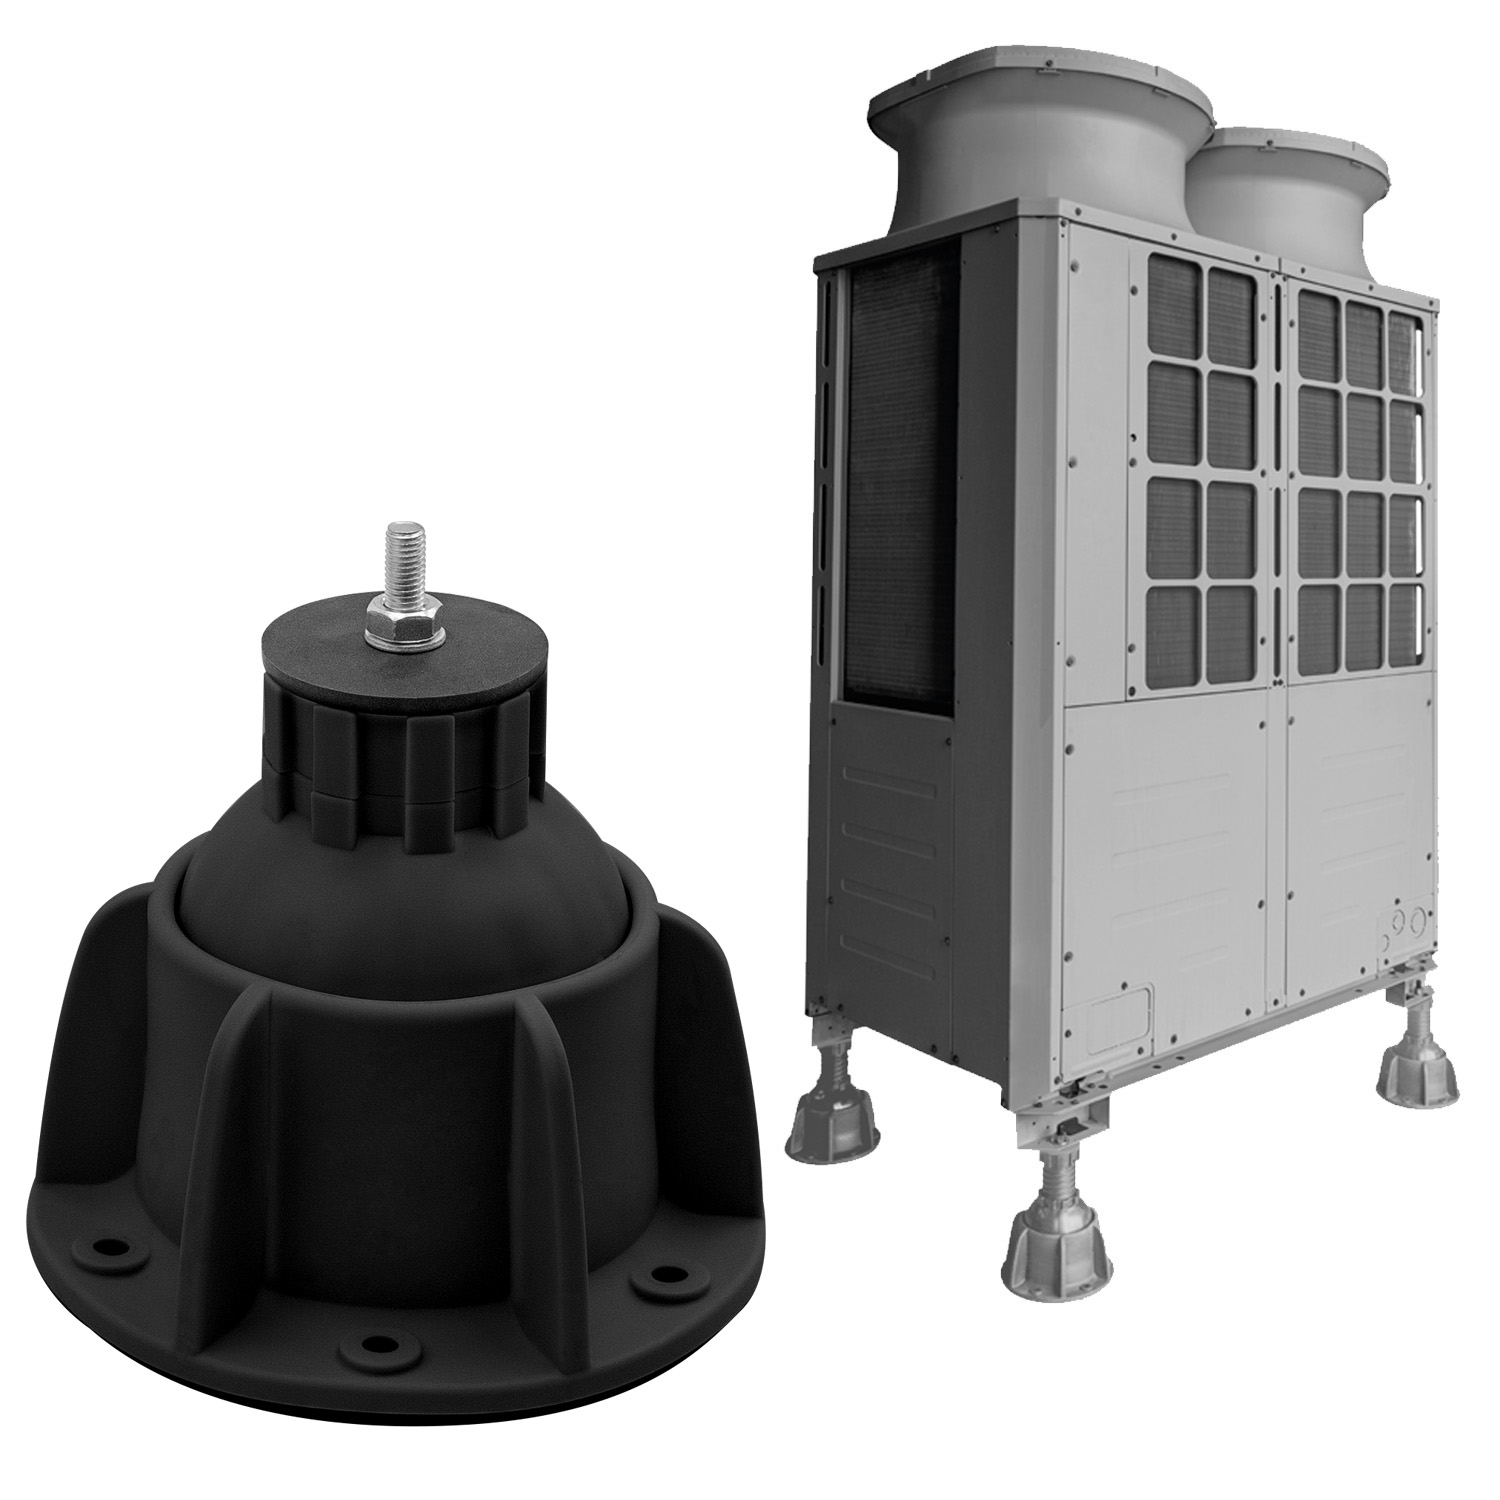 Steady - supporto a pavimento per unità esterne AC, pompe di calore e Refrigerazione - portata fino a 1500 kg, inclinabile fino a 35°, rotazione a 360° - colore nero RAL9004 - Foto 1 